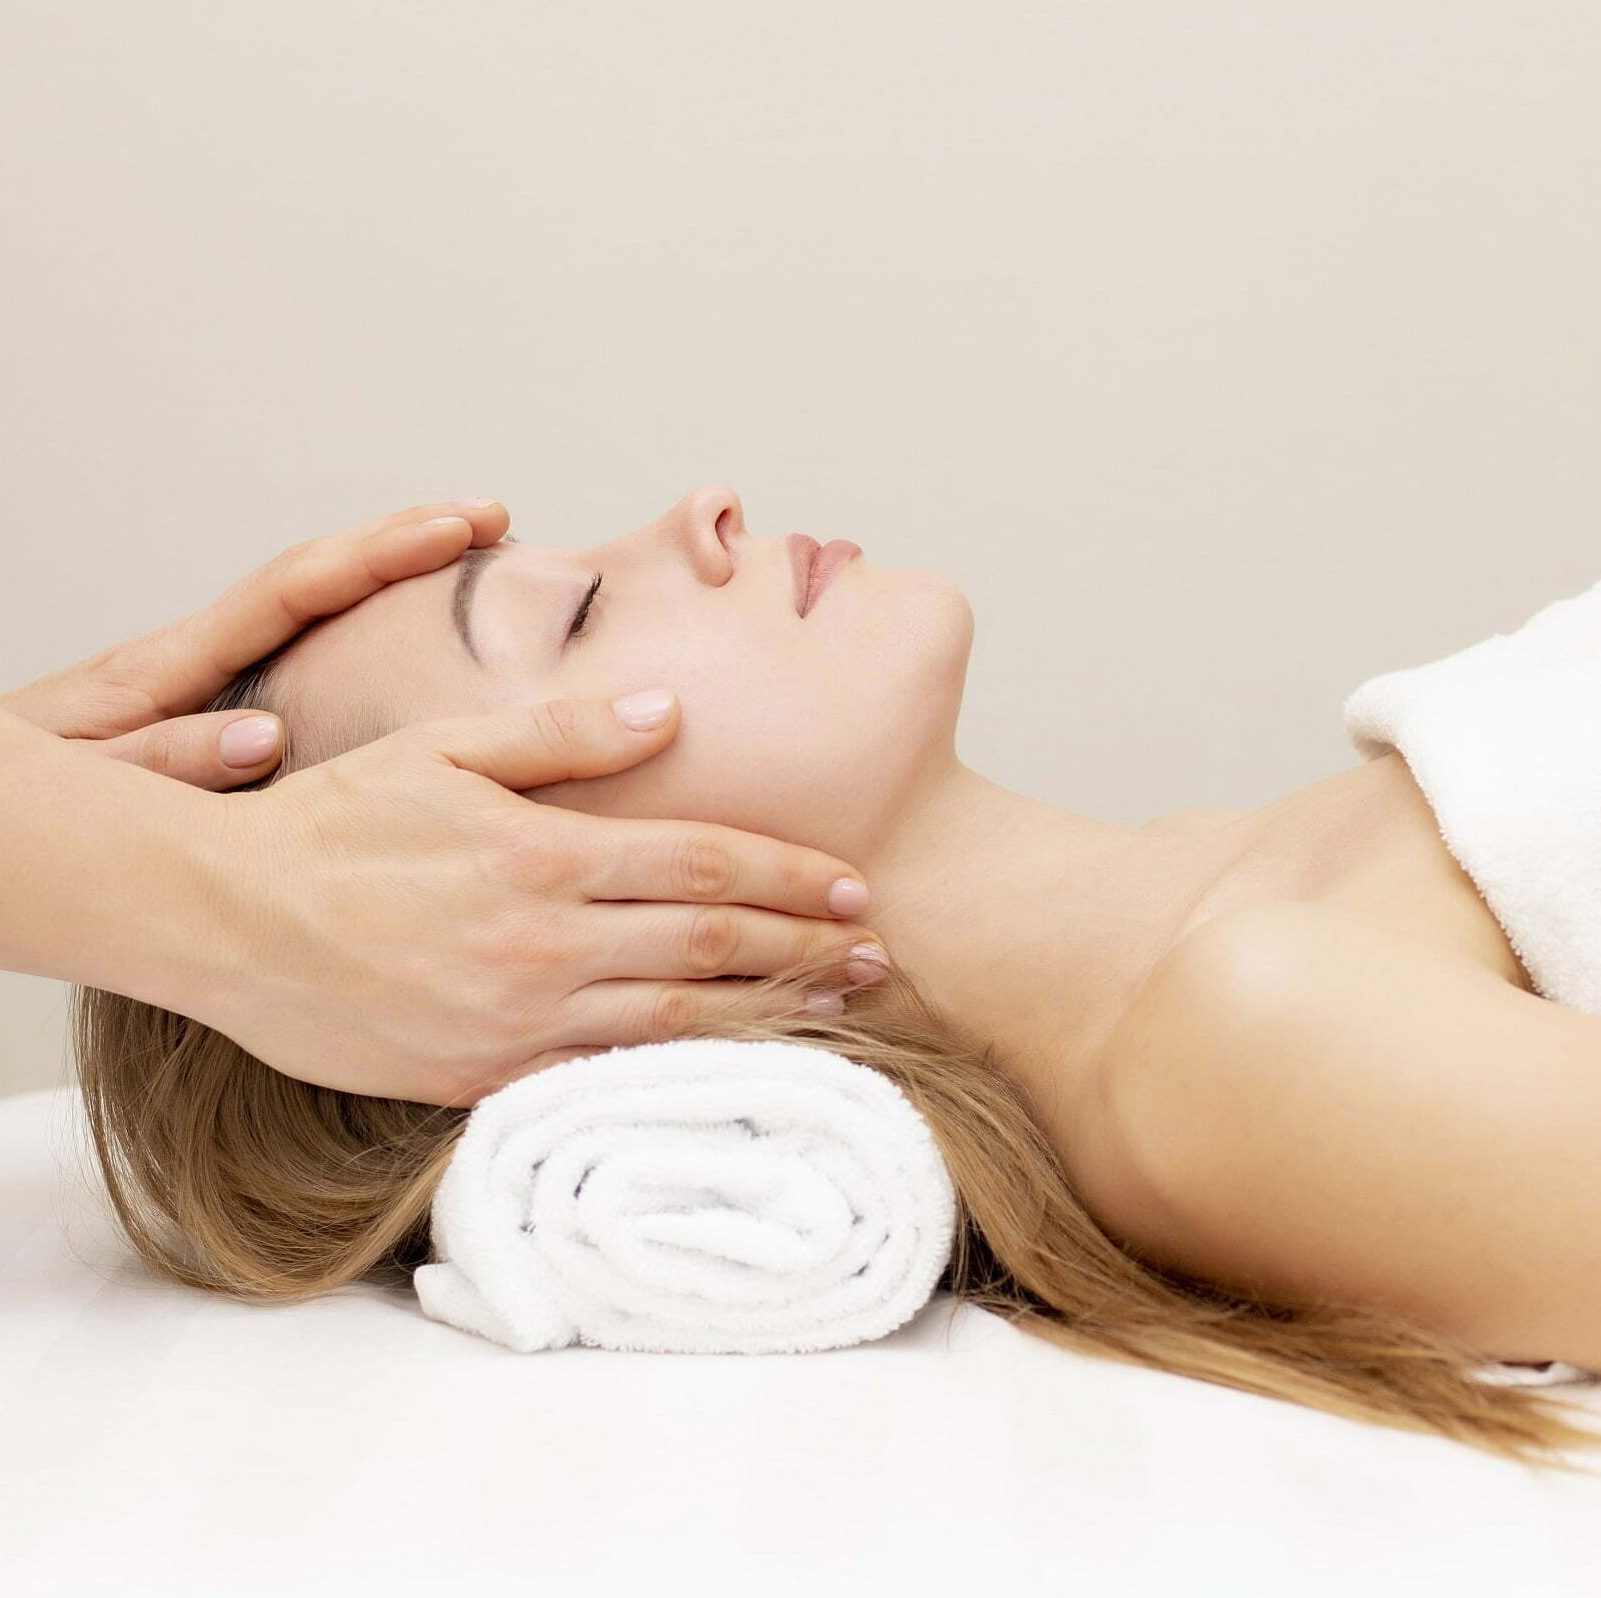 Woman enjoying massage therapy